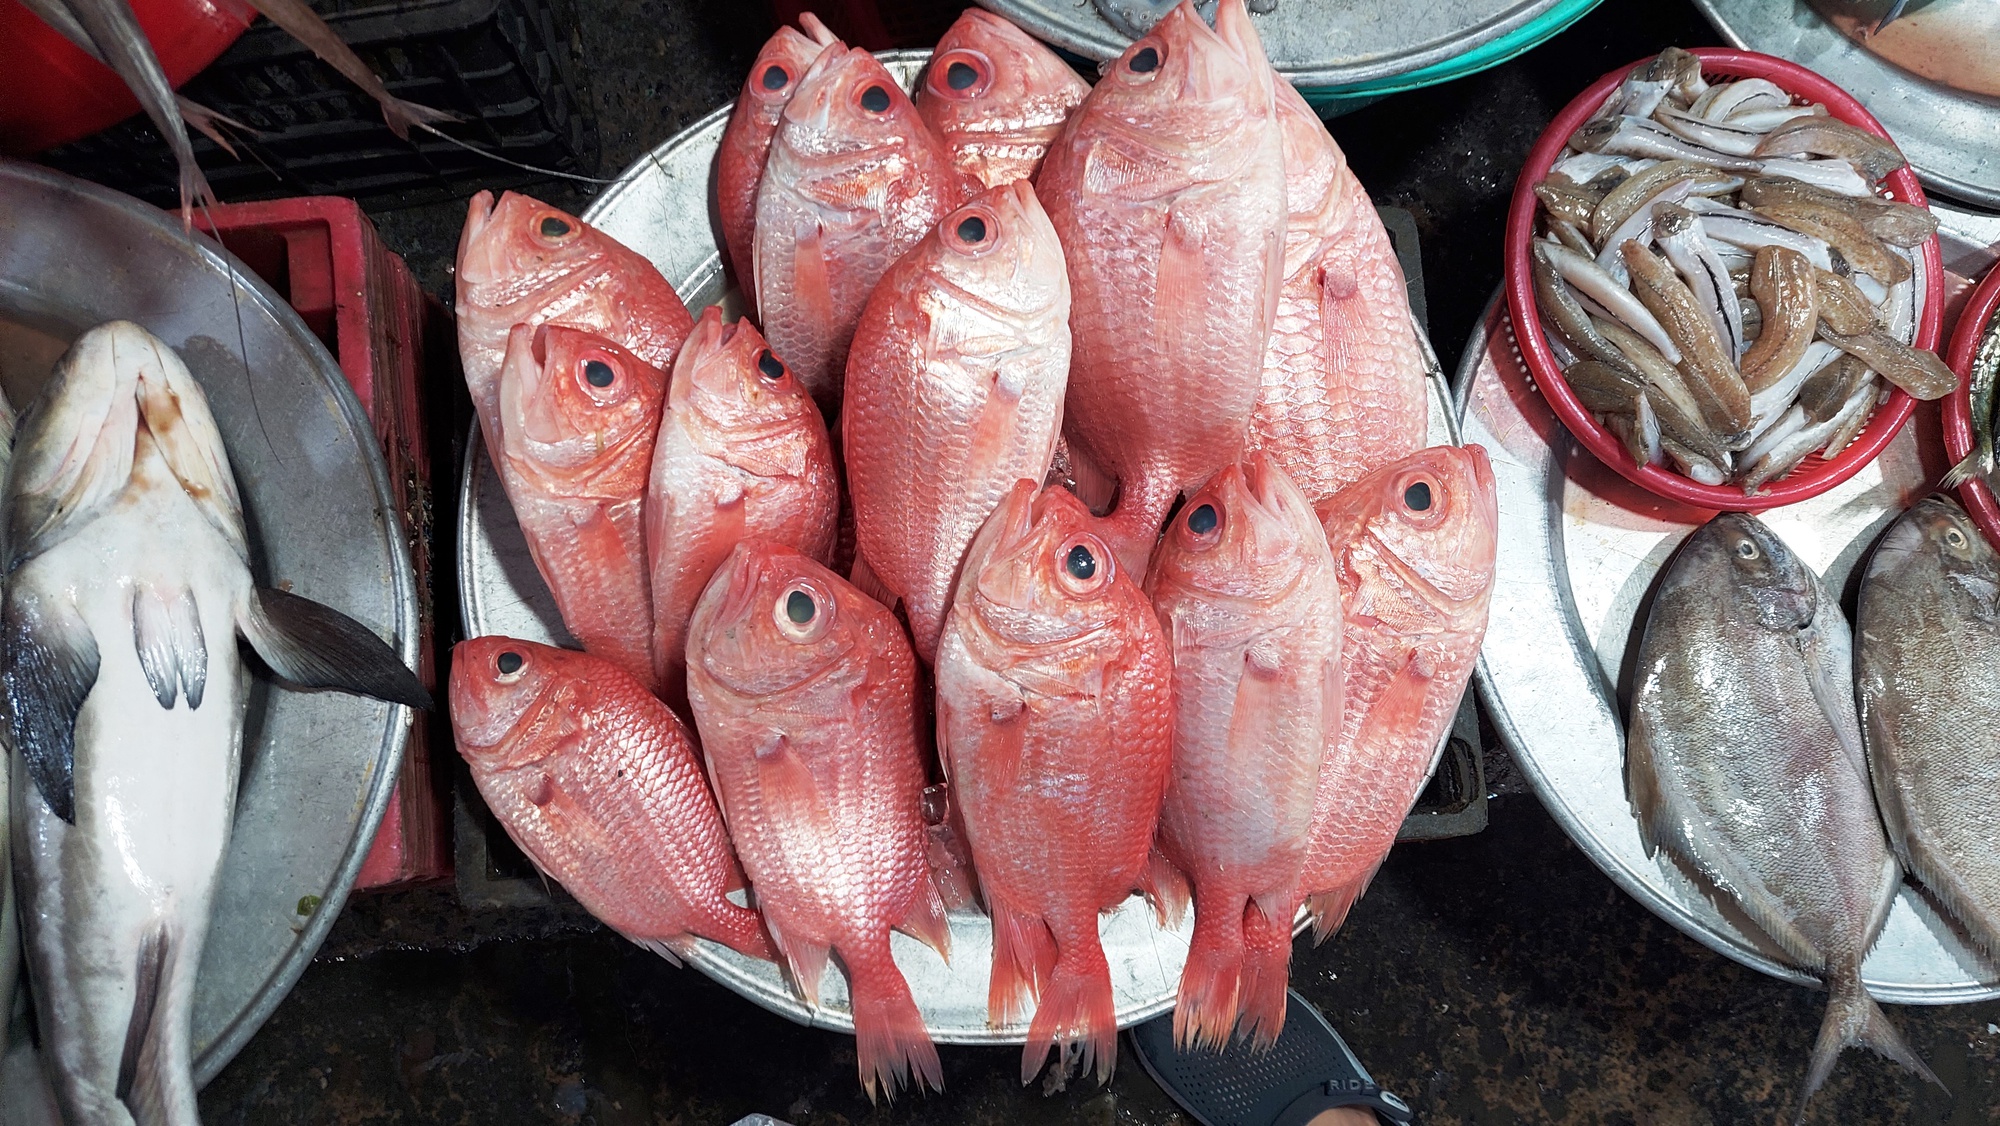 Lạc vào chợ Chiều chuyên bán hải sản lớn nhất Đà thành - Ảnh 10.